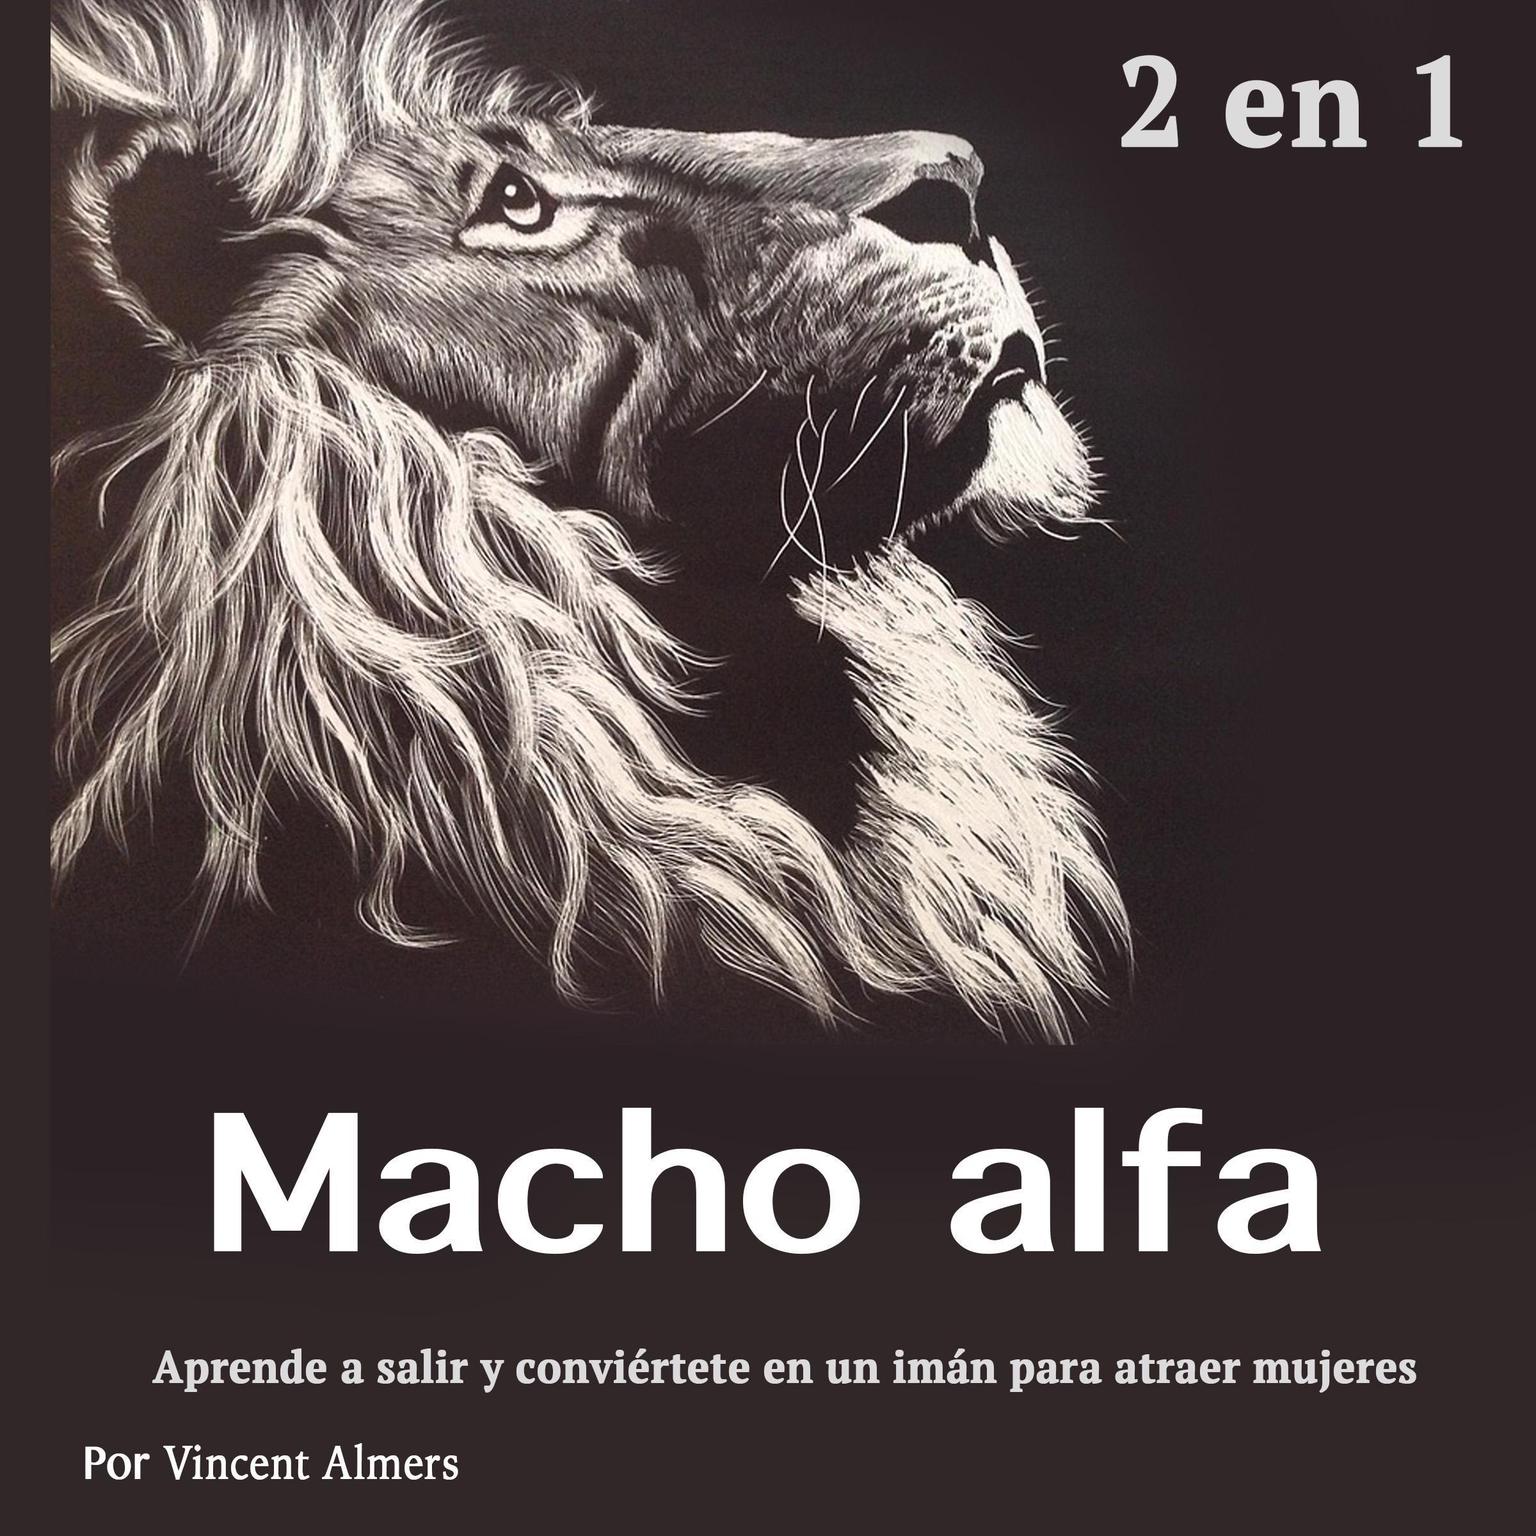 Macho alfa: Aprende a salir y conviértete en un imán para atraer mujeres (Spanish Edition) Audiobook, by Vincent Almers